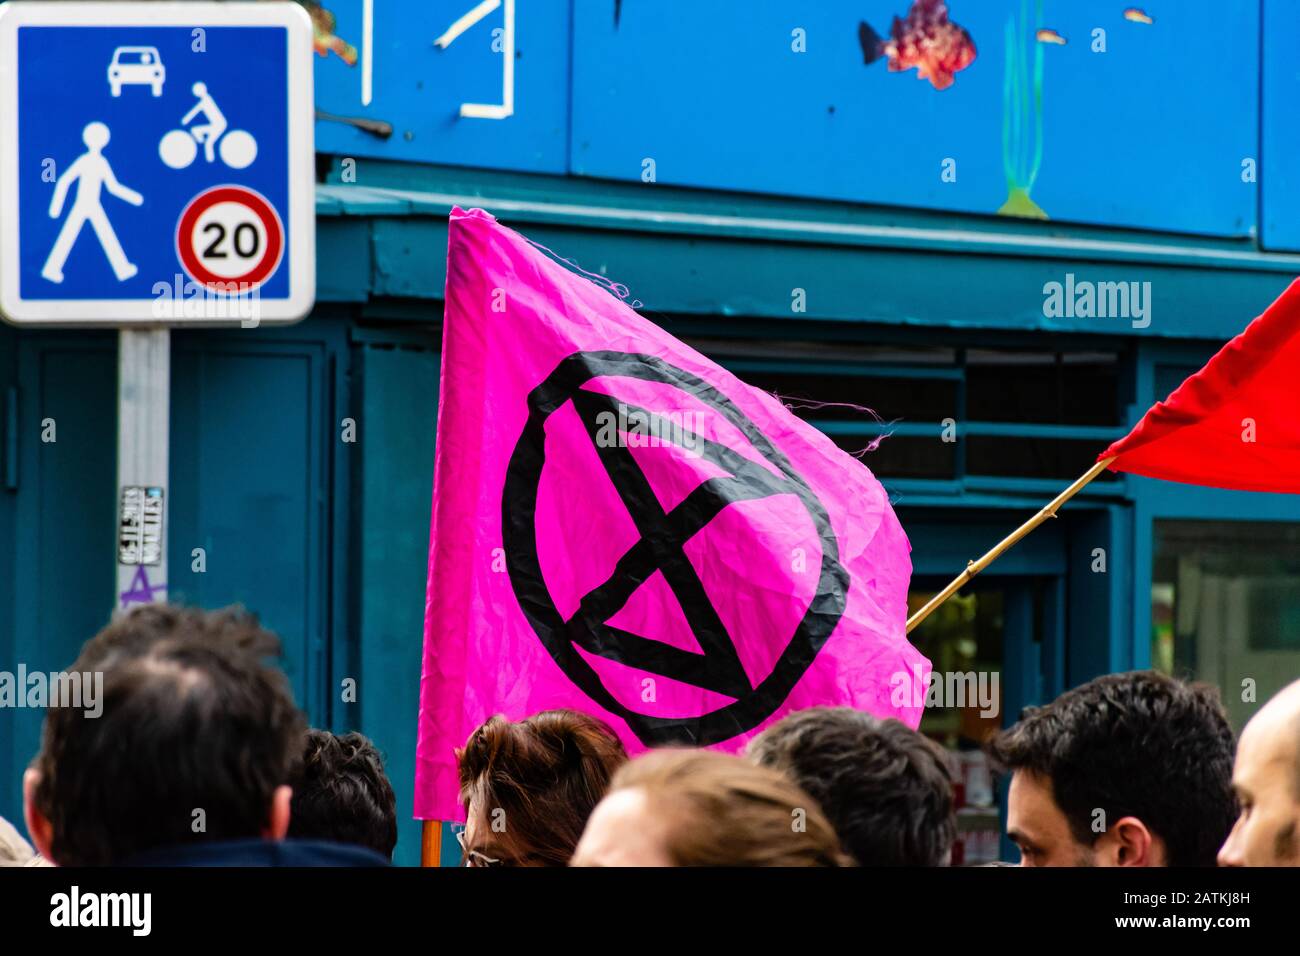 Marsella, Francia - 25 de enero de 2020: Manifestante llevando La bandera Rebellion De Extinción durante un 'arche de la colère' ('arco de ira') sobre asuntos de vivienda Foto de stock